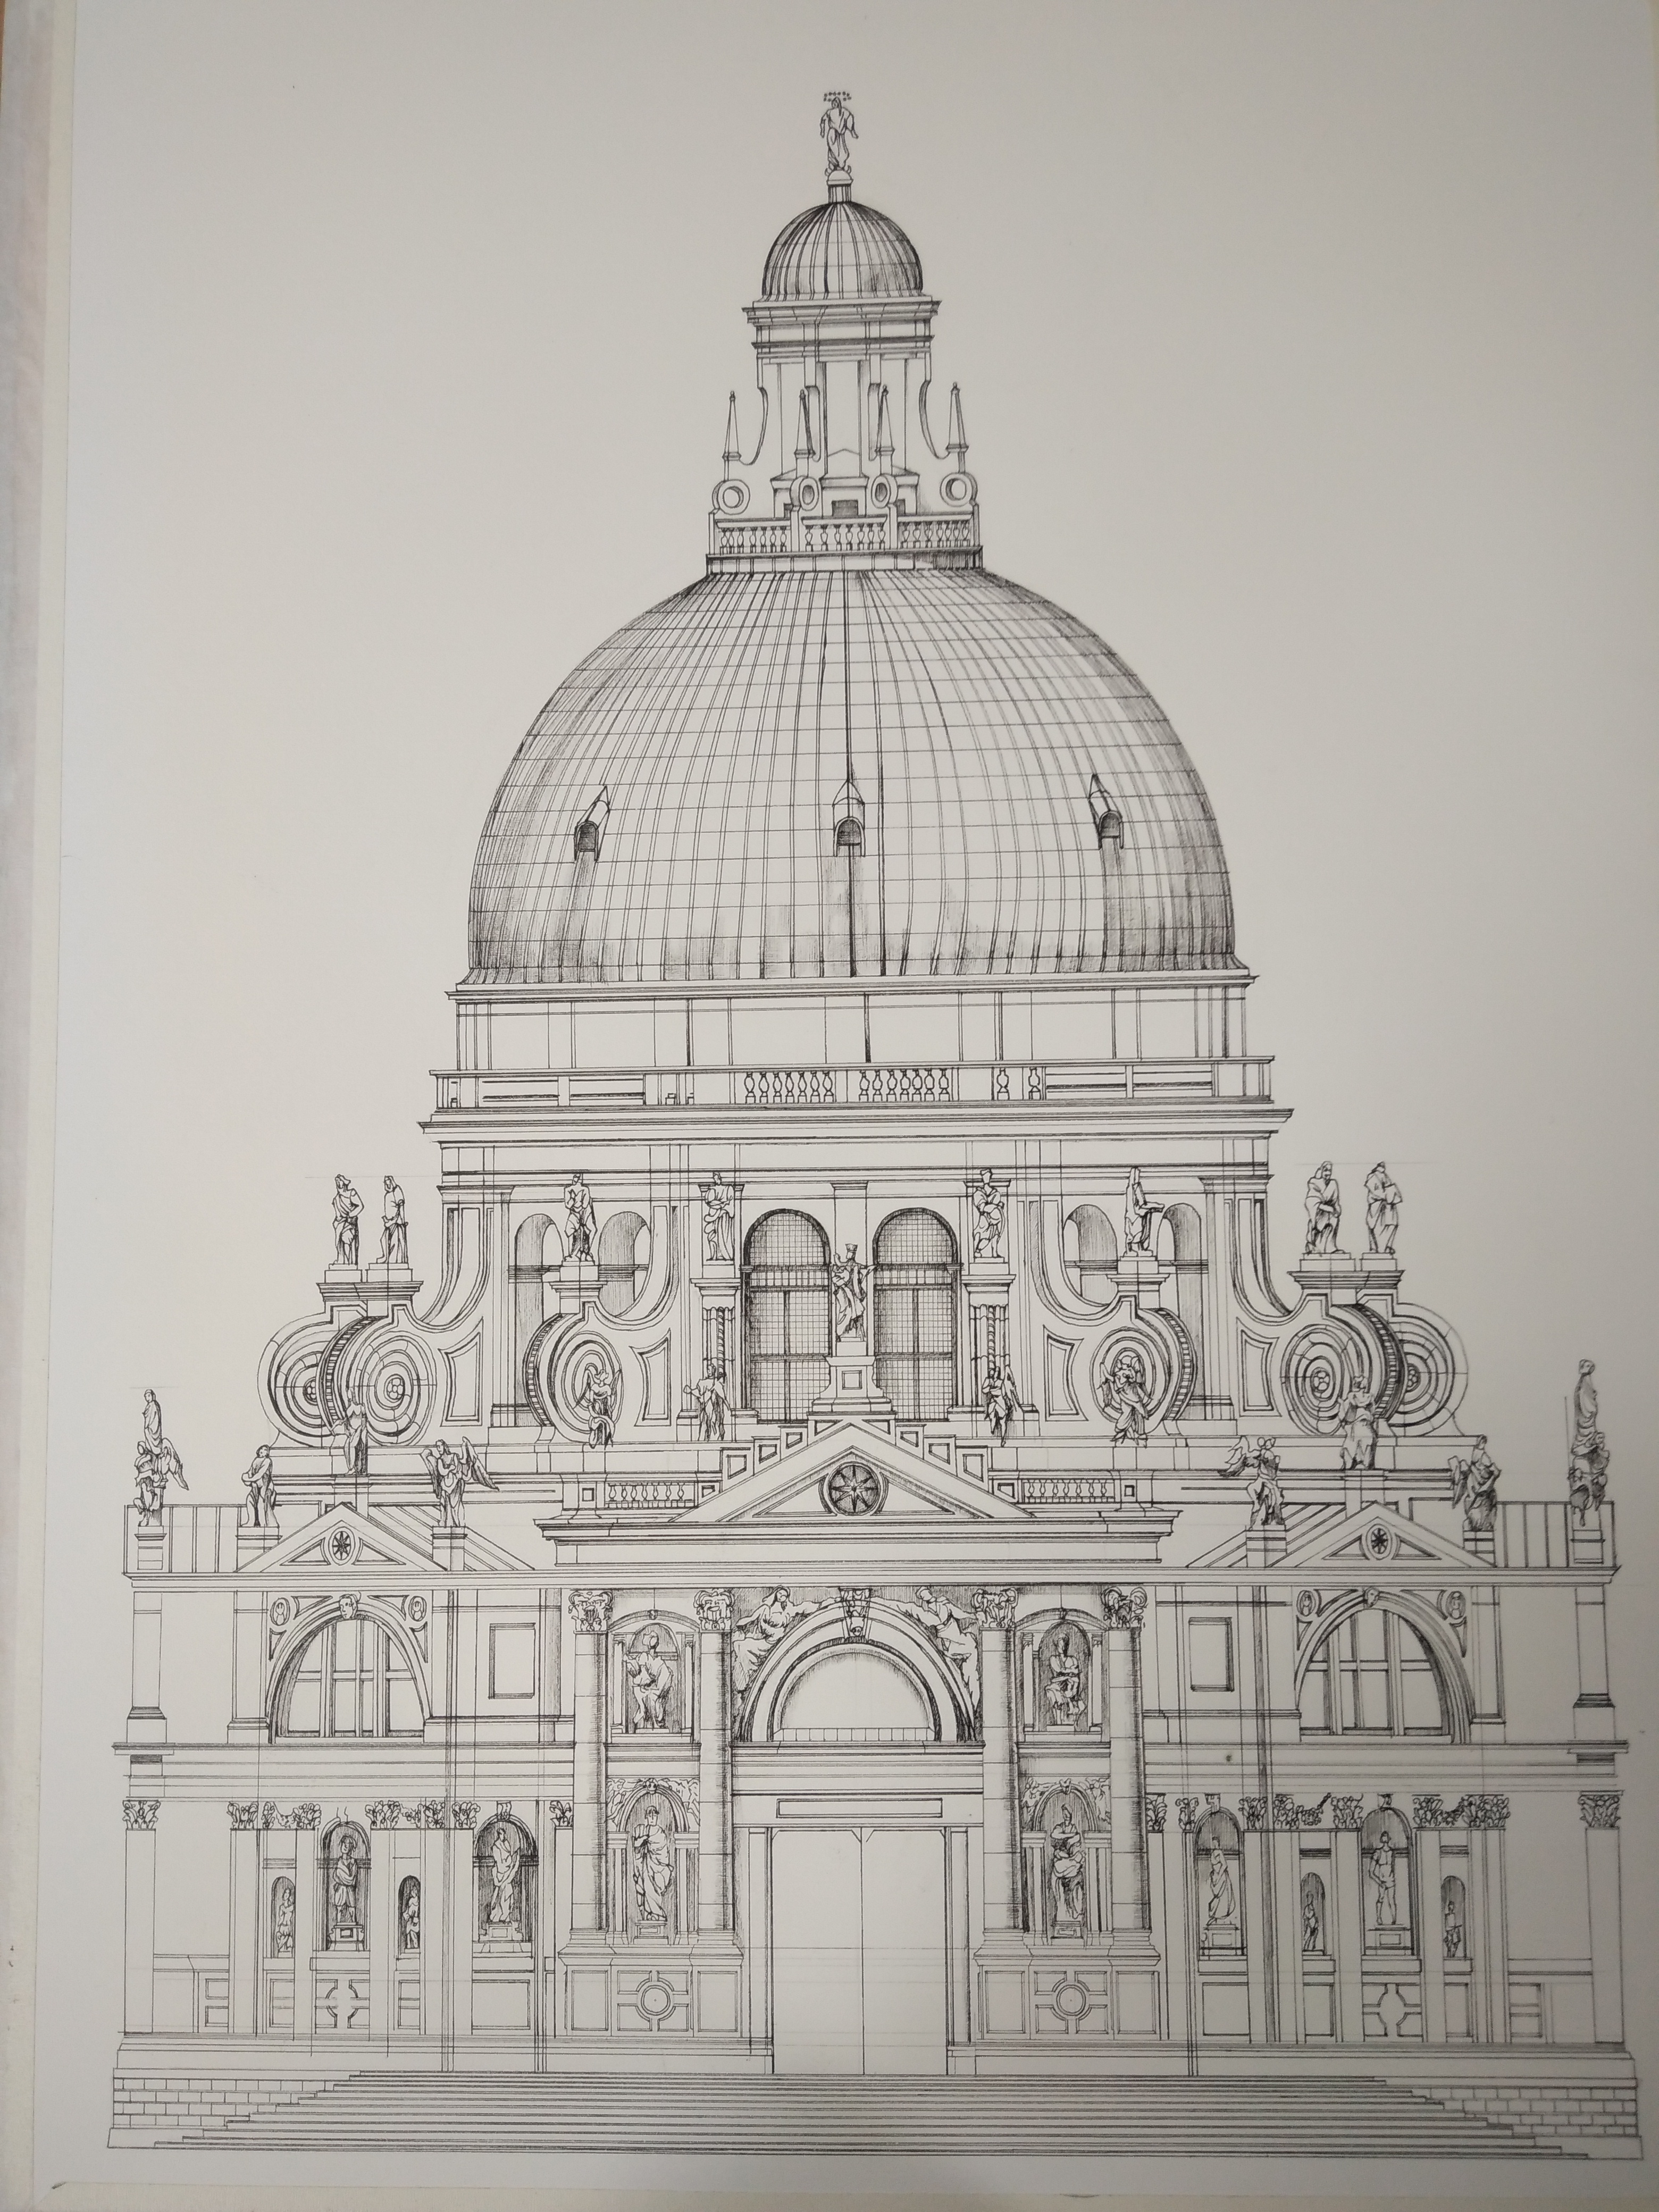 圣马可大教堂手绘图片